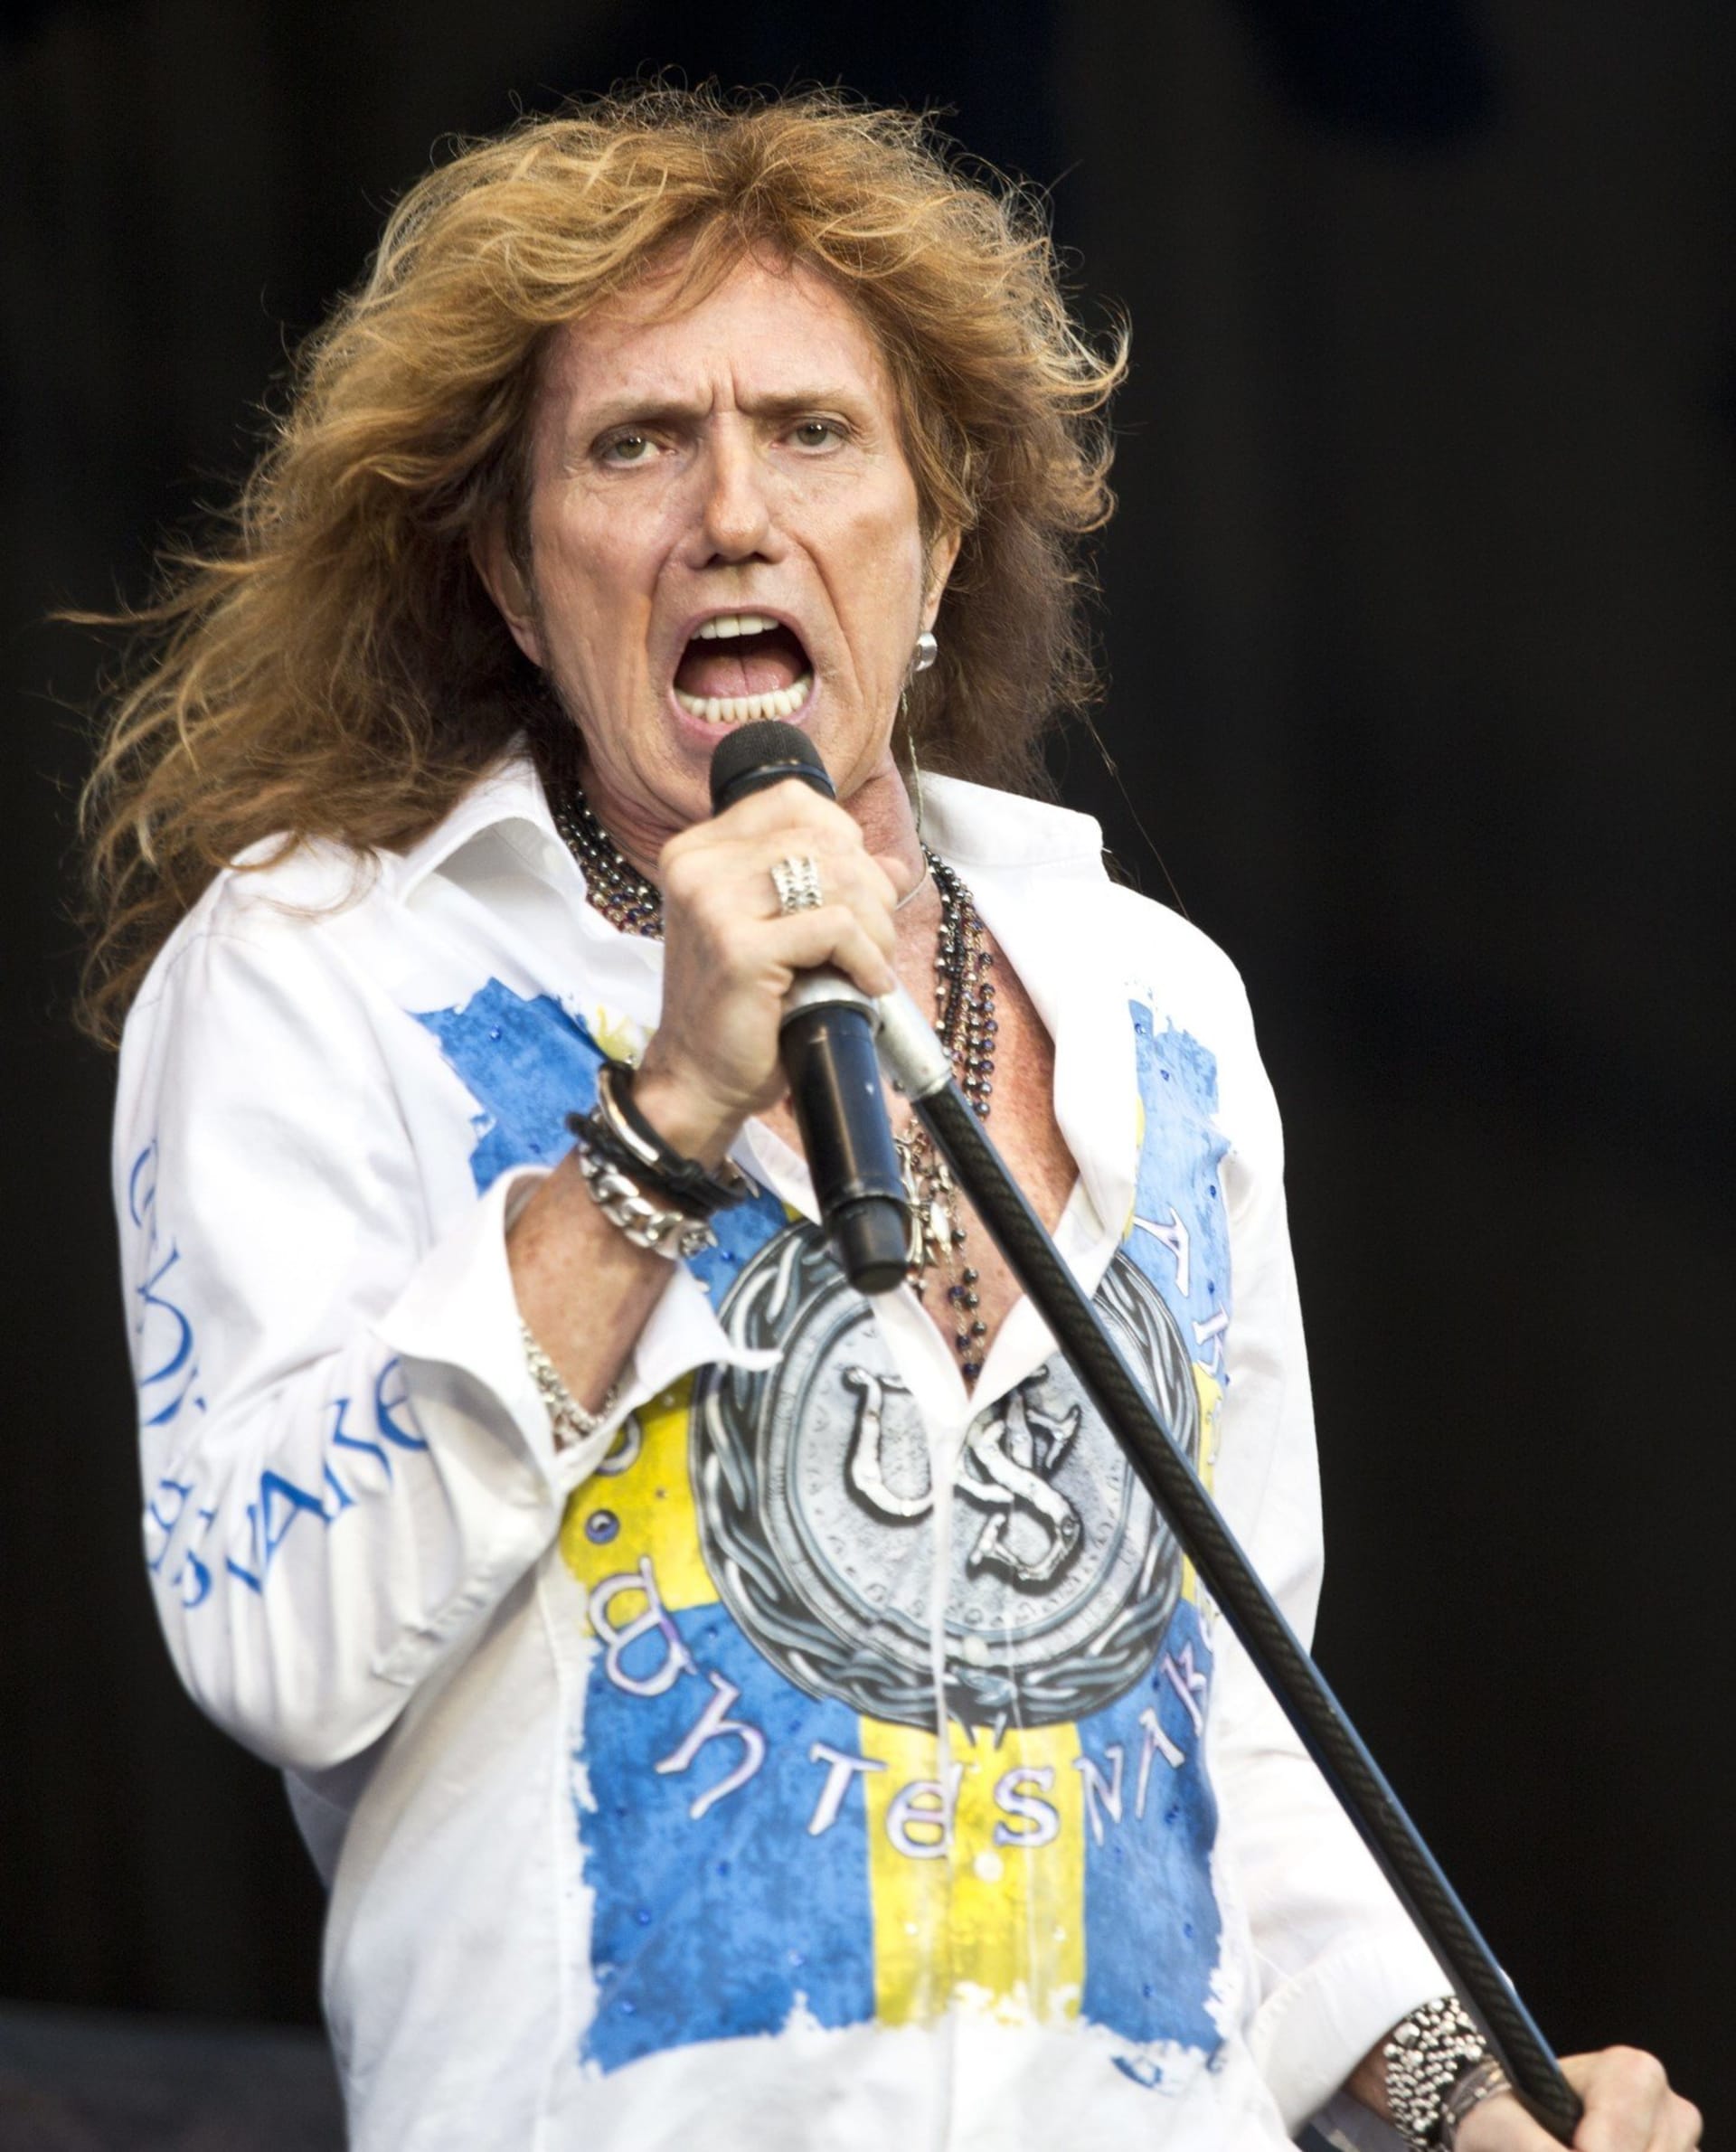 Jednou z hvězd večera bude David Coverdale, zakladatel skupiny Whitesnake.